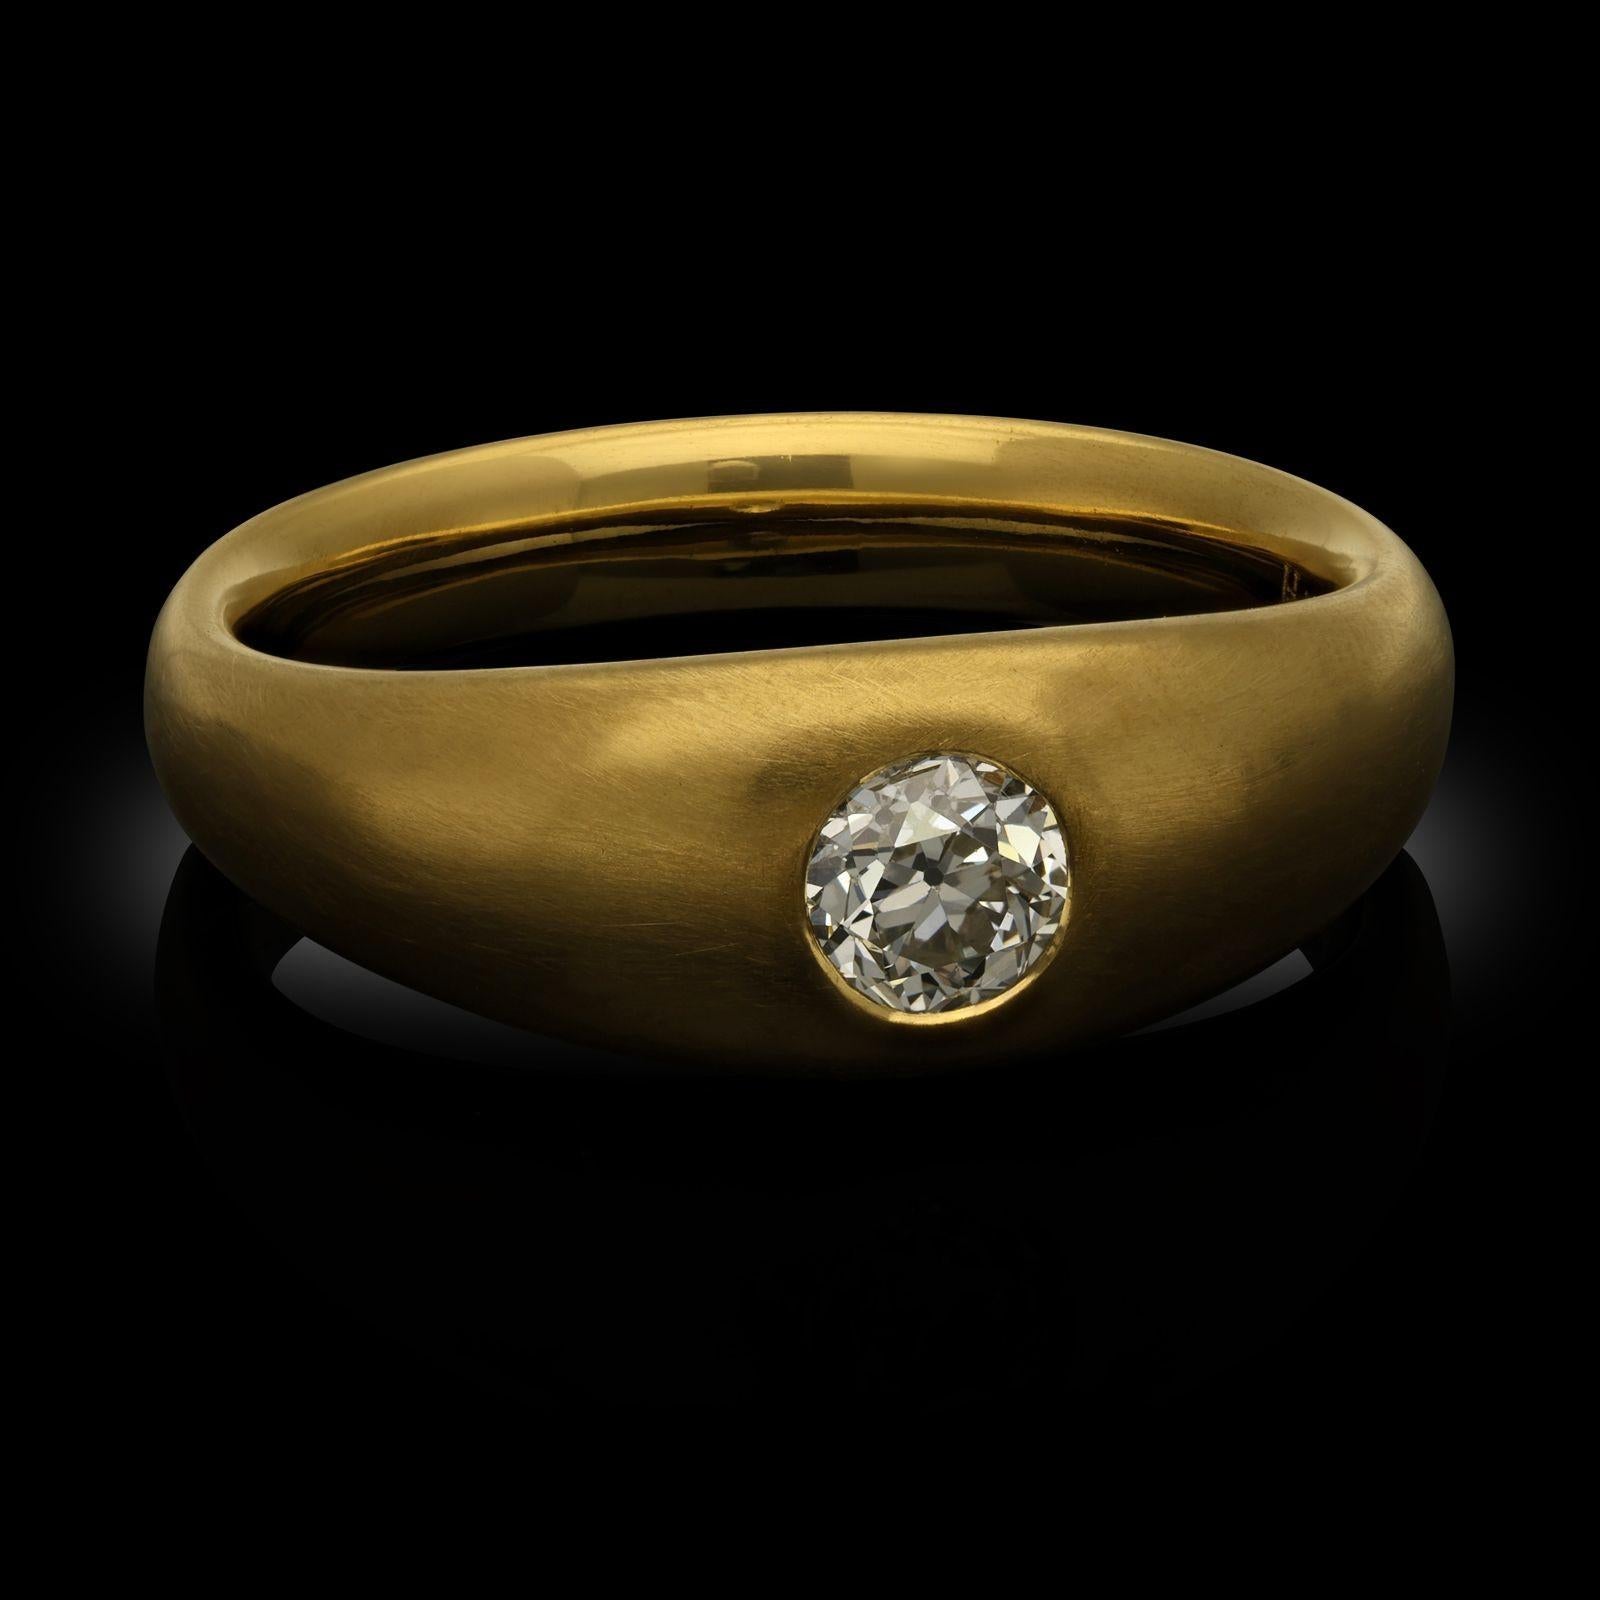 Bague sertie d'un diamant de taille ancienne et d'un anneau en or jaune par Hancocks. La bague est sertie au centre d'un diamant de taille européenne ancienne pesant 0,54 ct serti en affleurement dans une monture de style gypsie à l'intérieur d'un